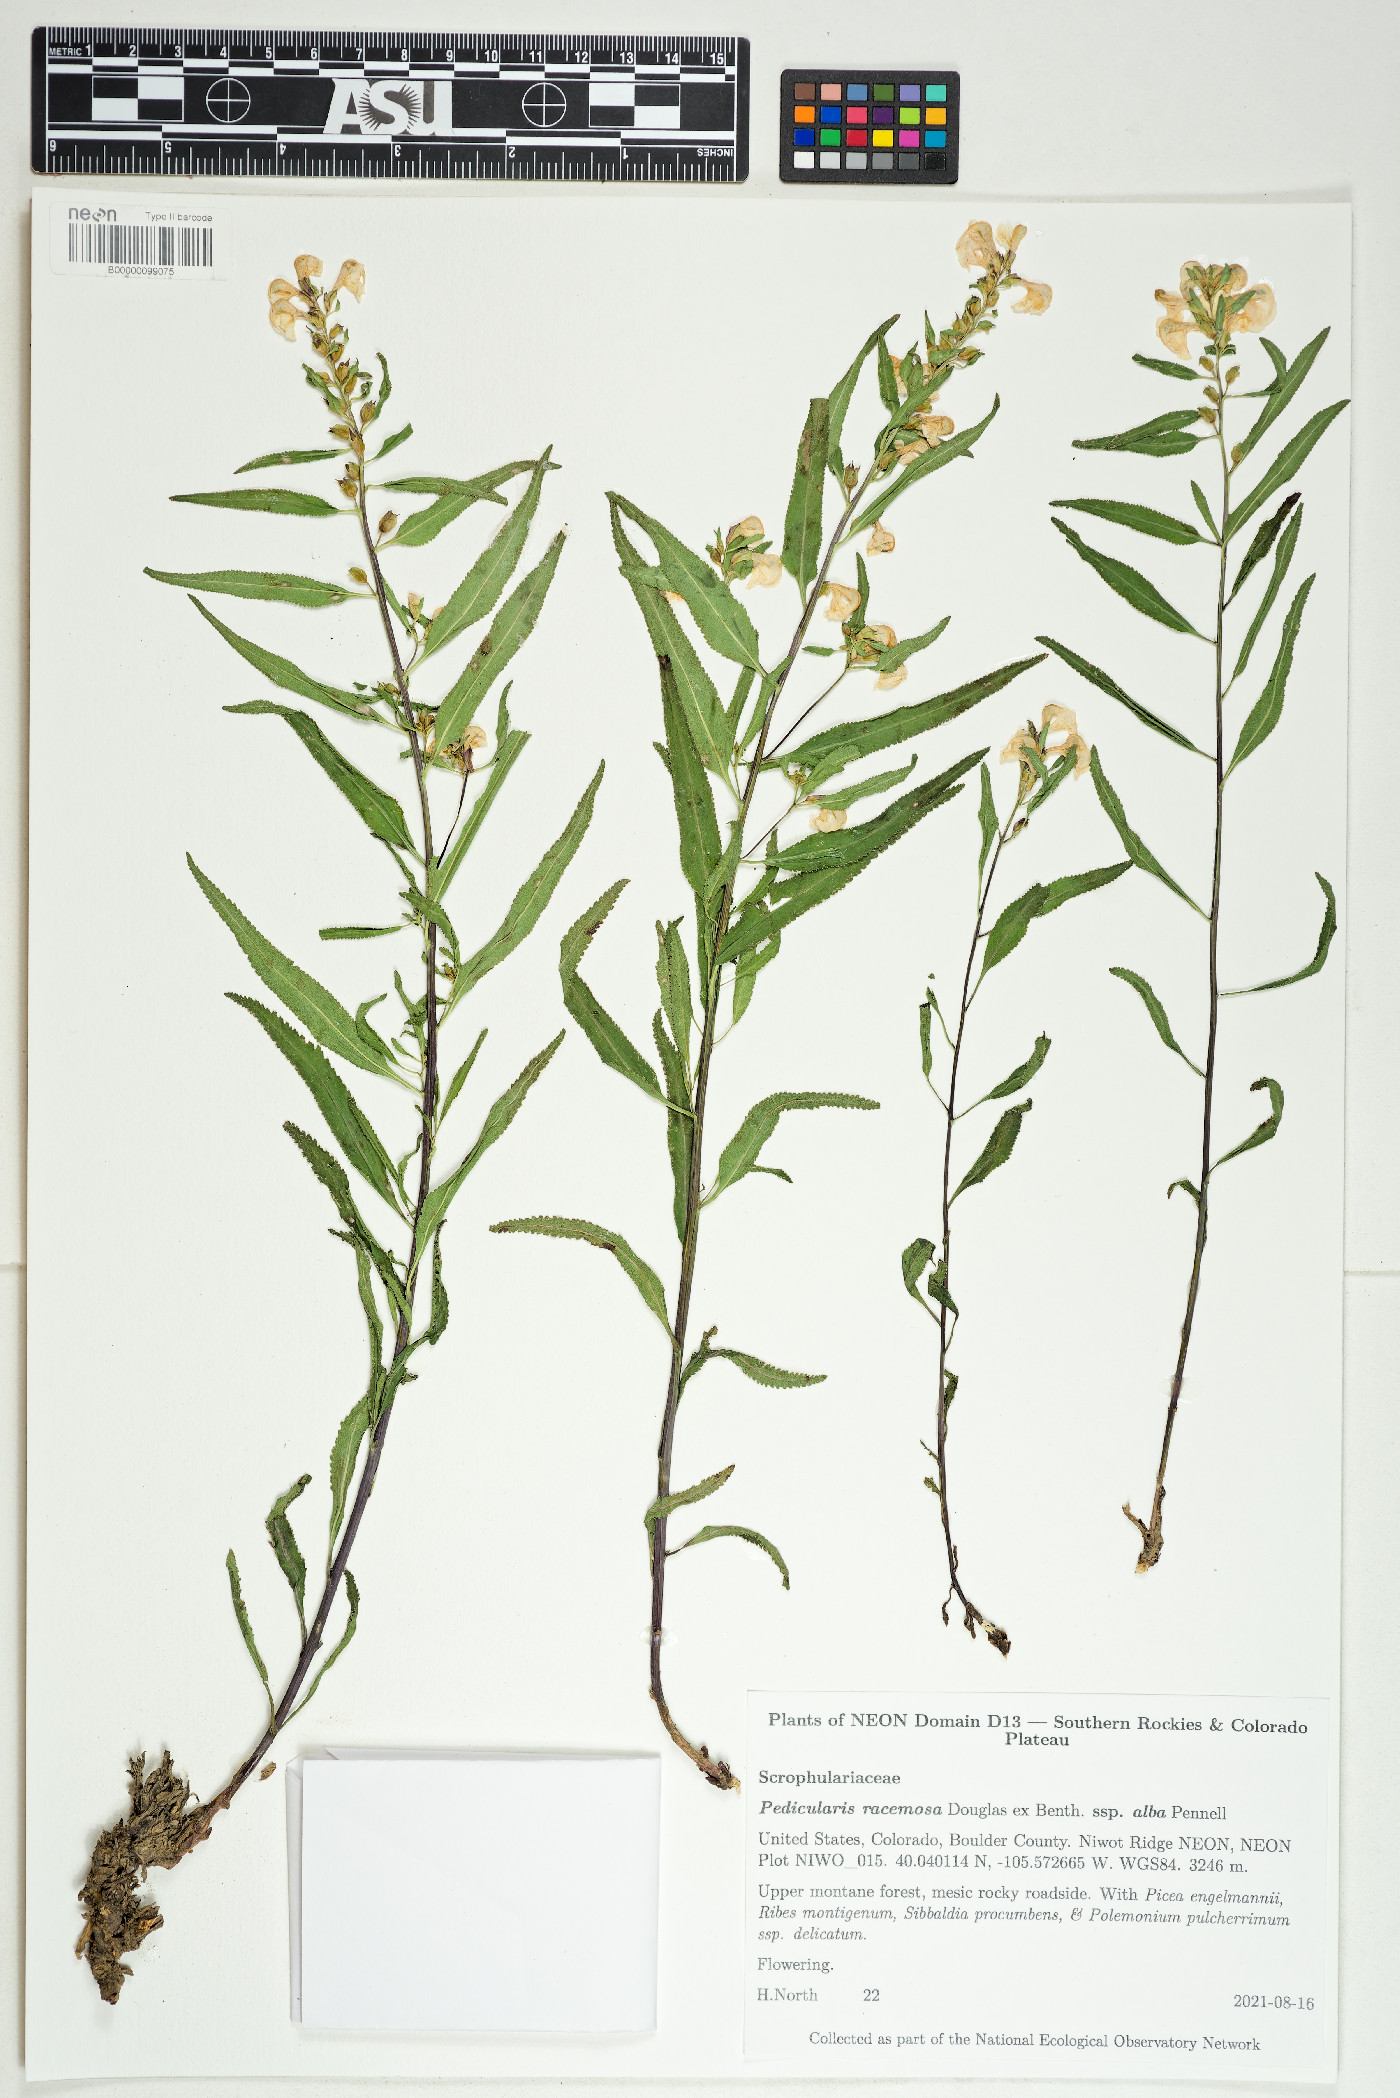 Pedicularis racemosa subsp. alba image